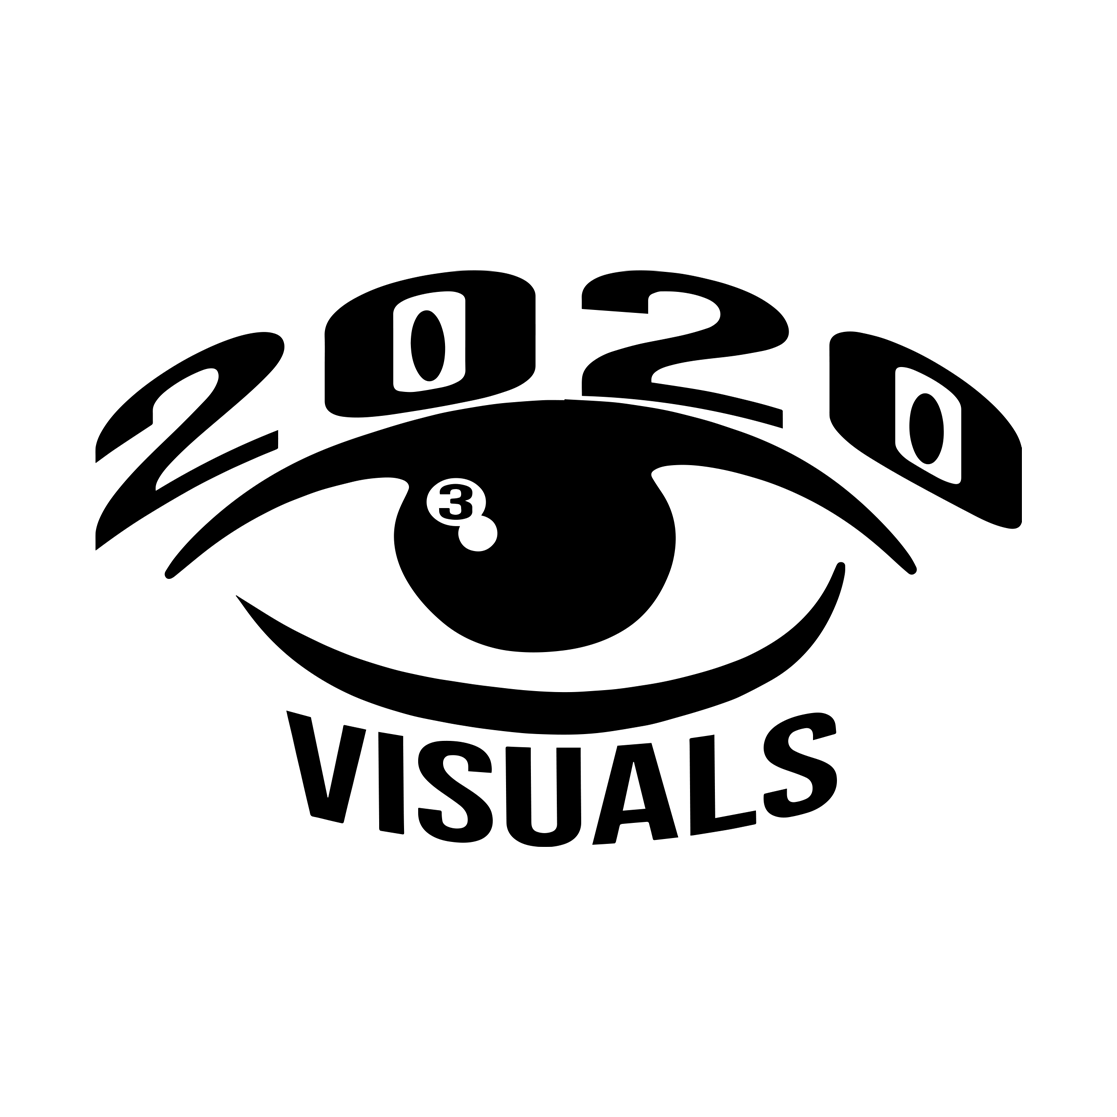 2020visuals1